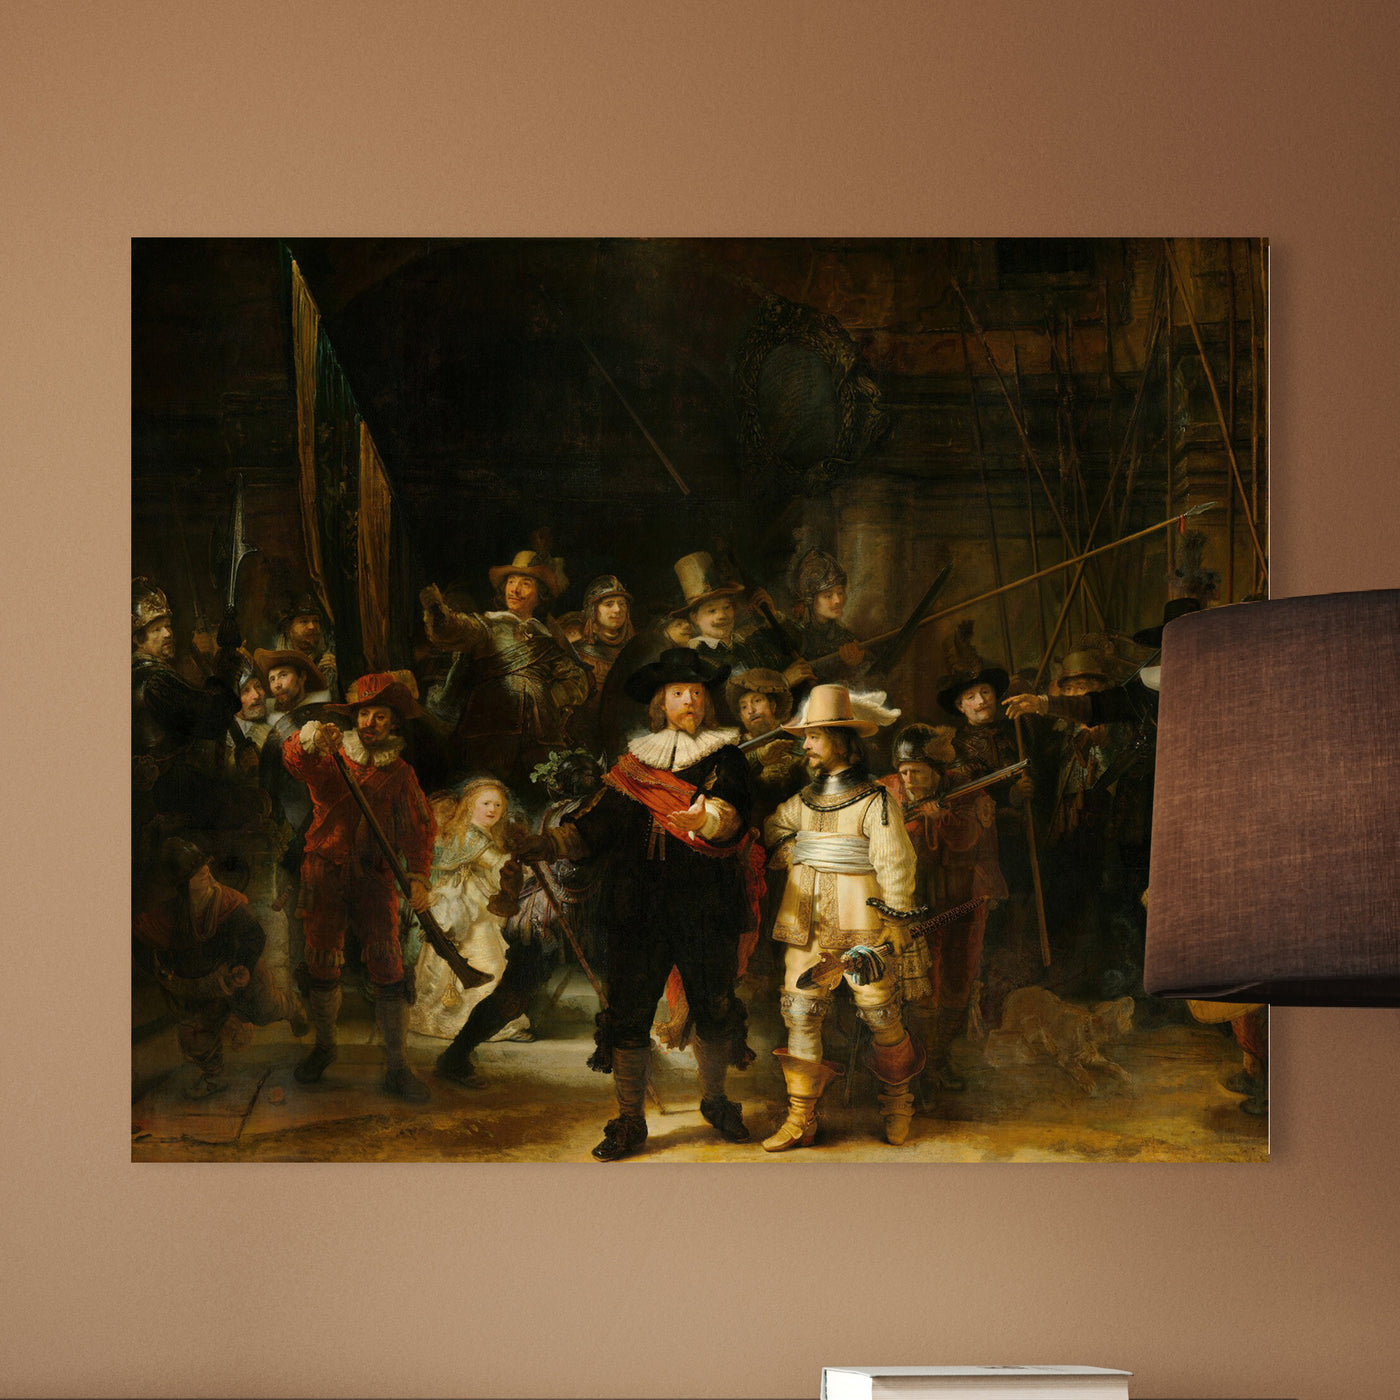 Die Nachtwache, Rembrandt van Rijn, 1642